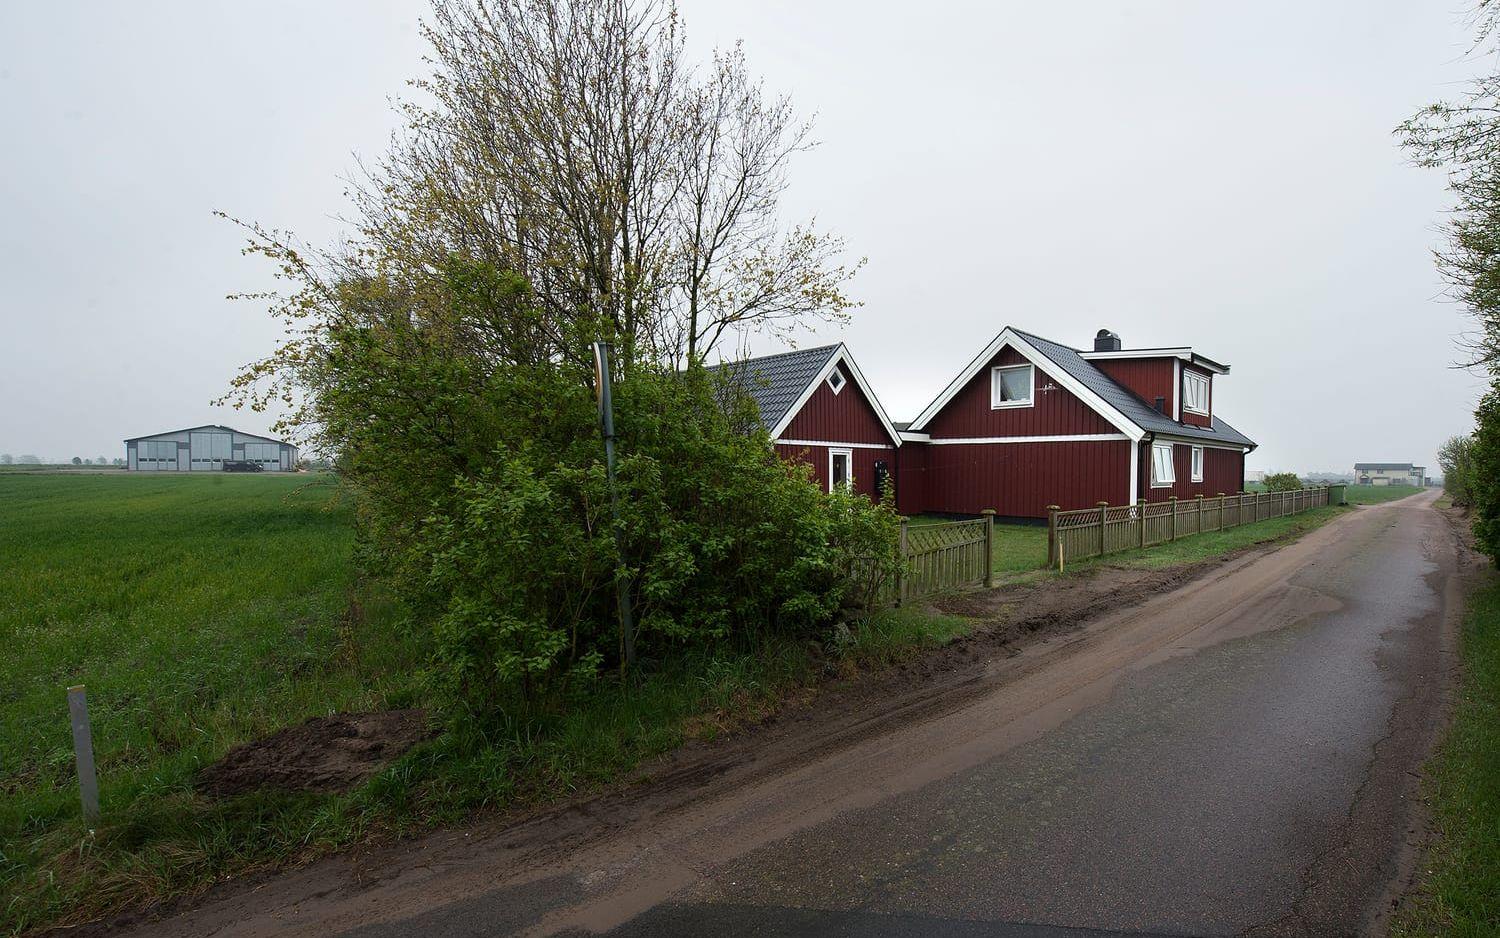 Roland och Ann Bengtsson, som drev minkfarmen i Glommen, hyrde ut sitt hus till Lundell med familj en sommar. Bild: Ola Folkesson